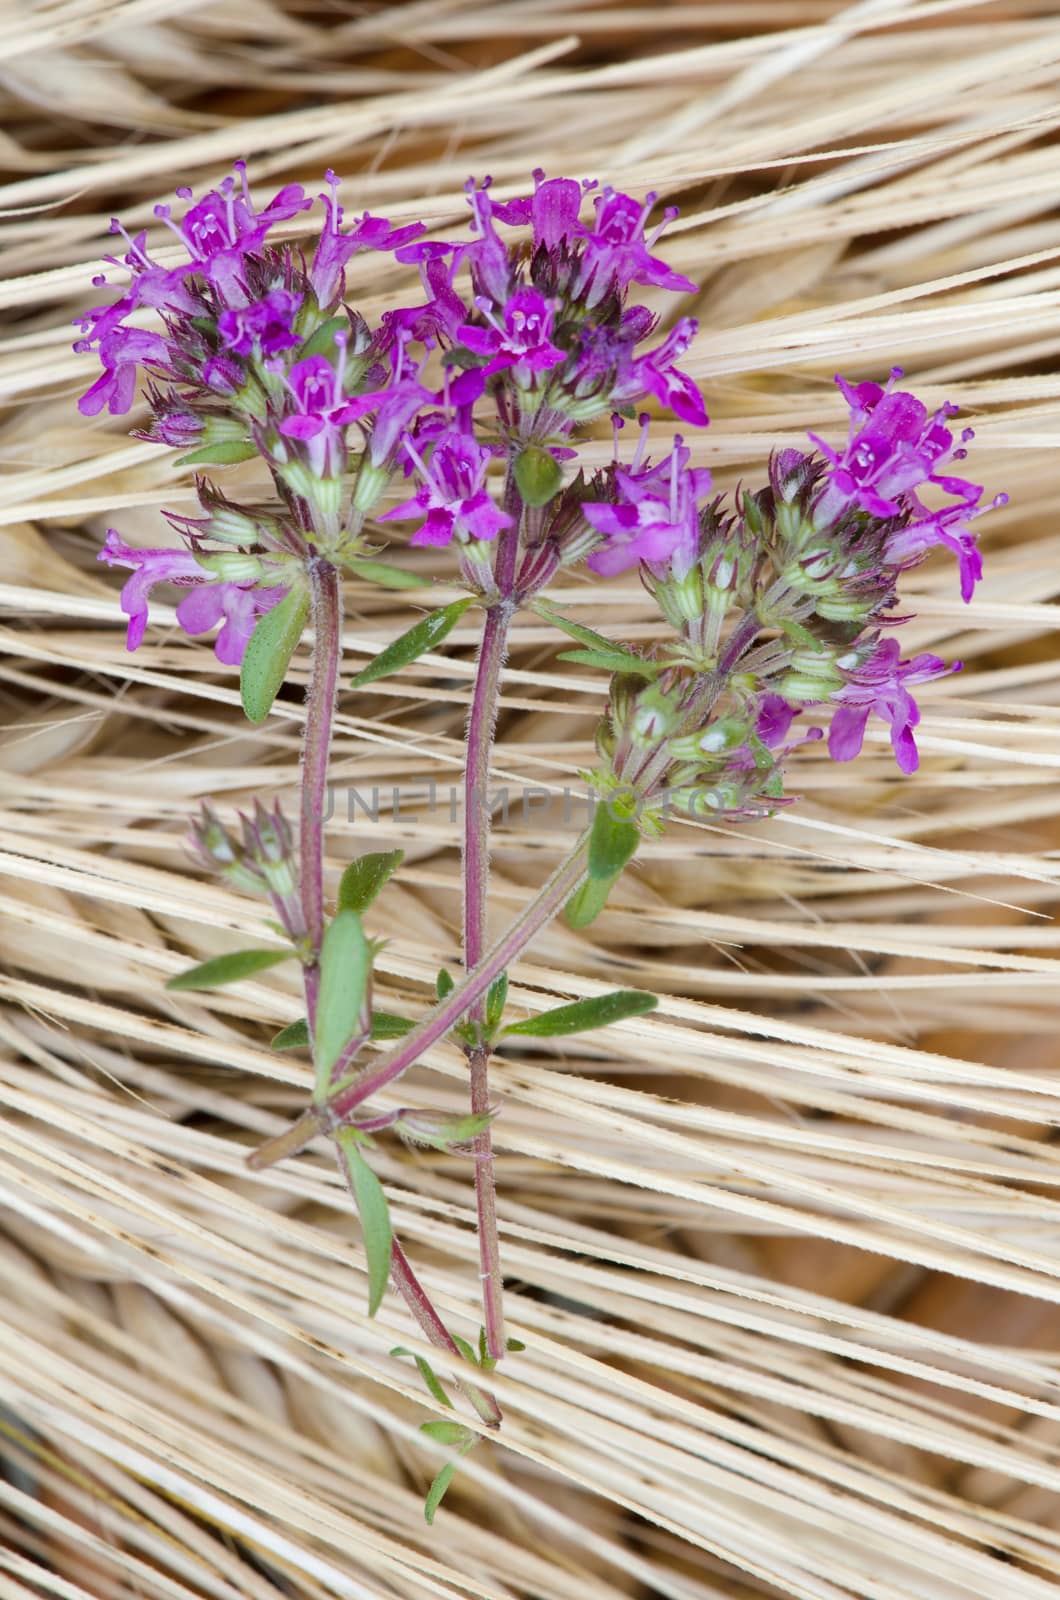 Purple flower shot against brown corn background.